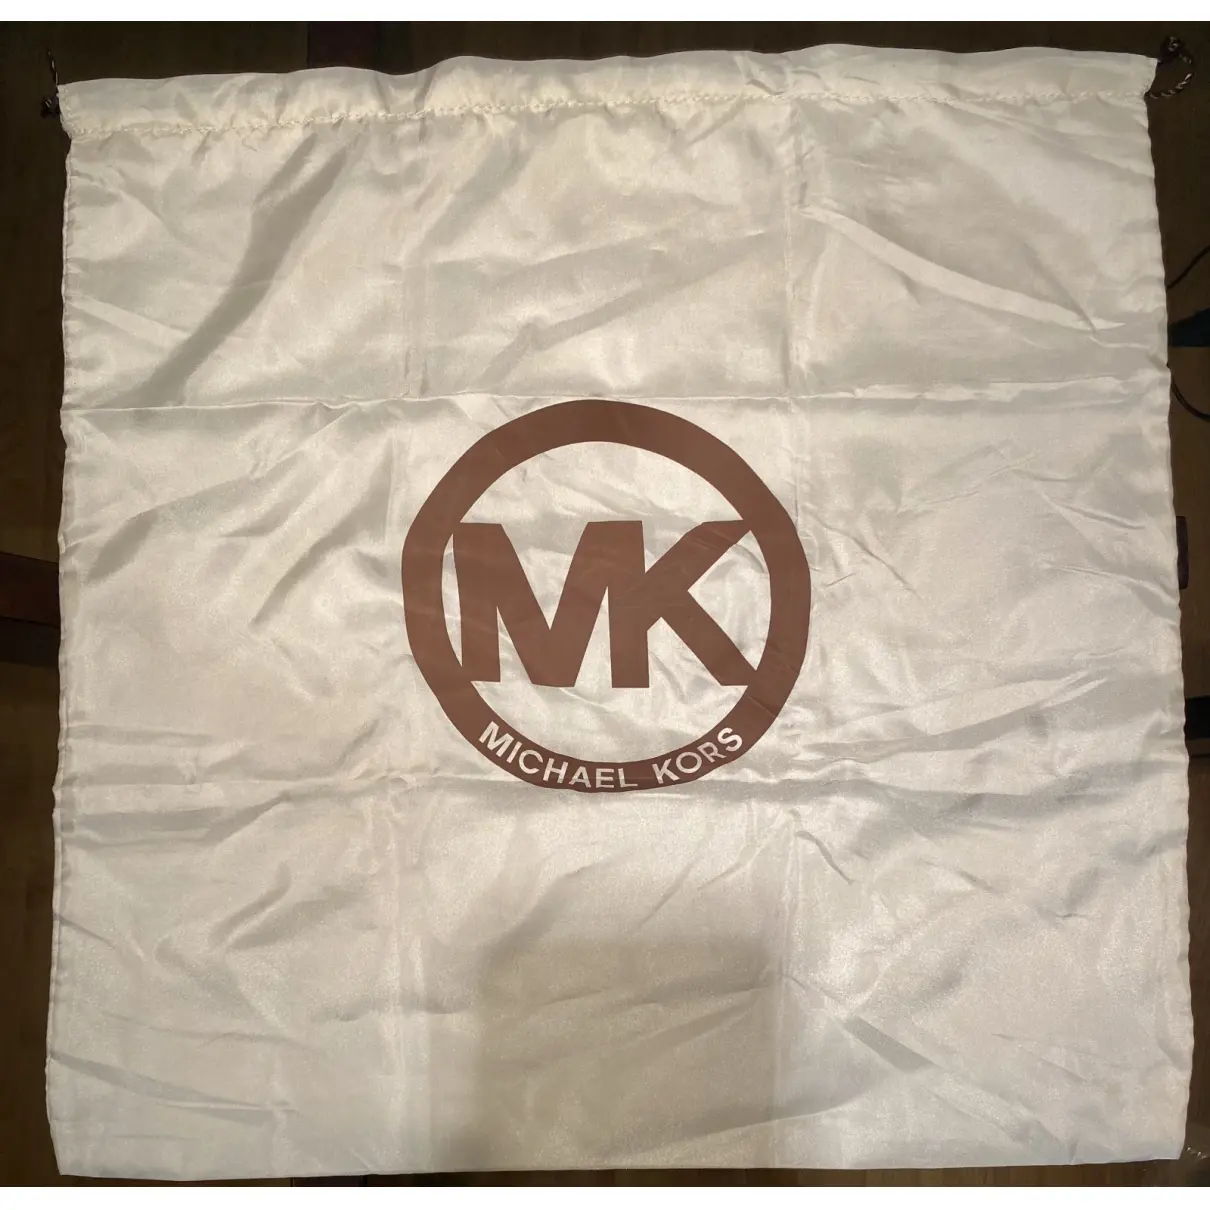 Michael Kors Jet Set leather travel bag for sale